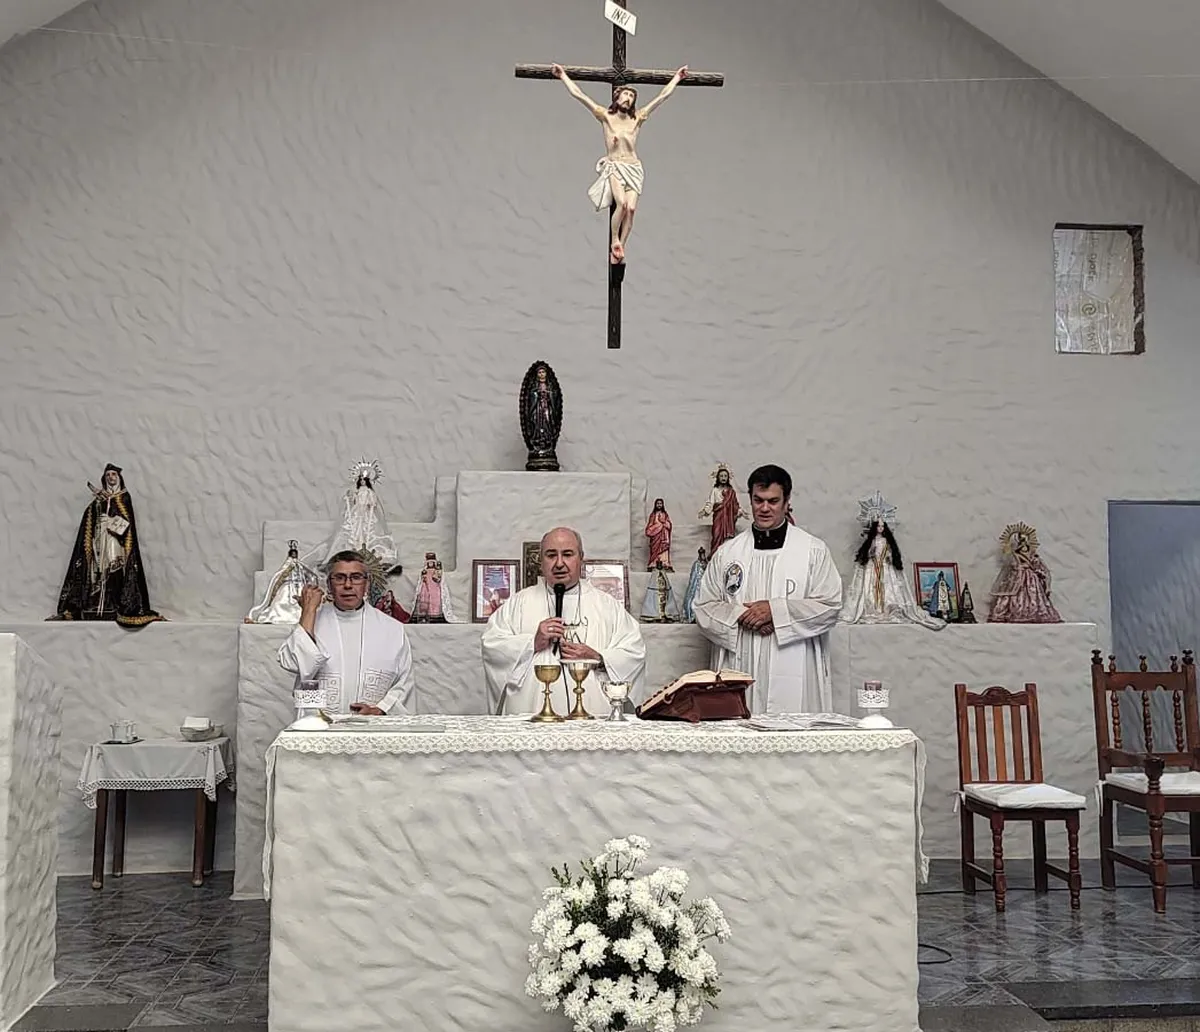 El Gobierno provincial acompañó a la comunidad de Palma Sola en su fiesta patronal